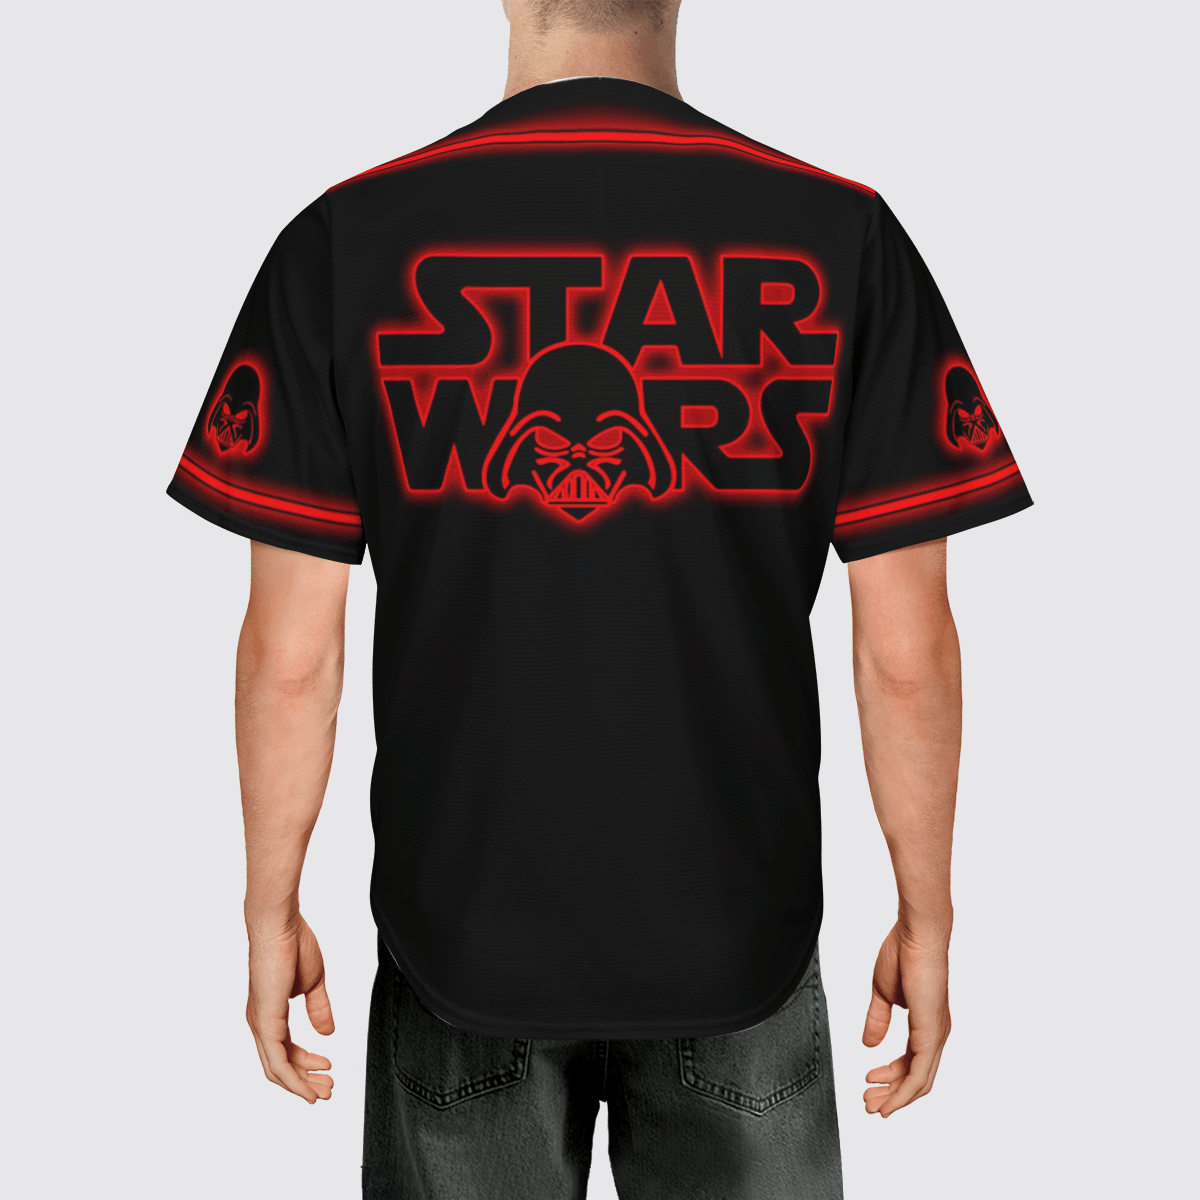 Darth Vader Star Wars baseball shirt 3